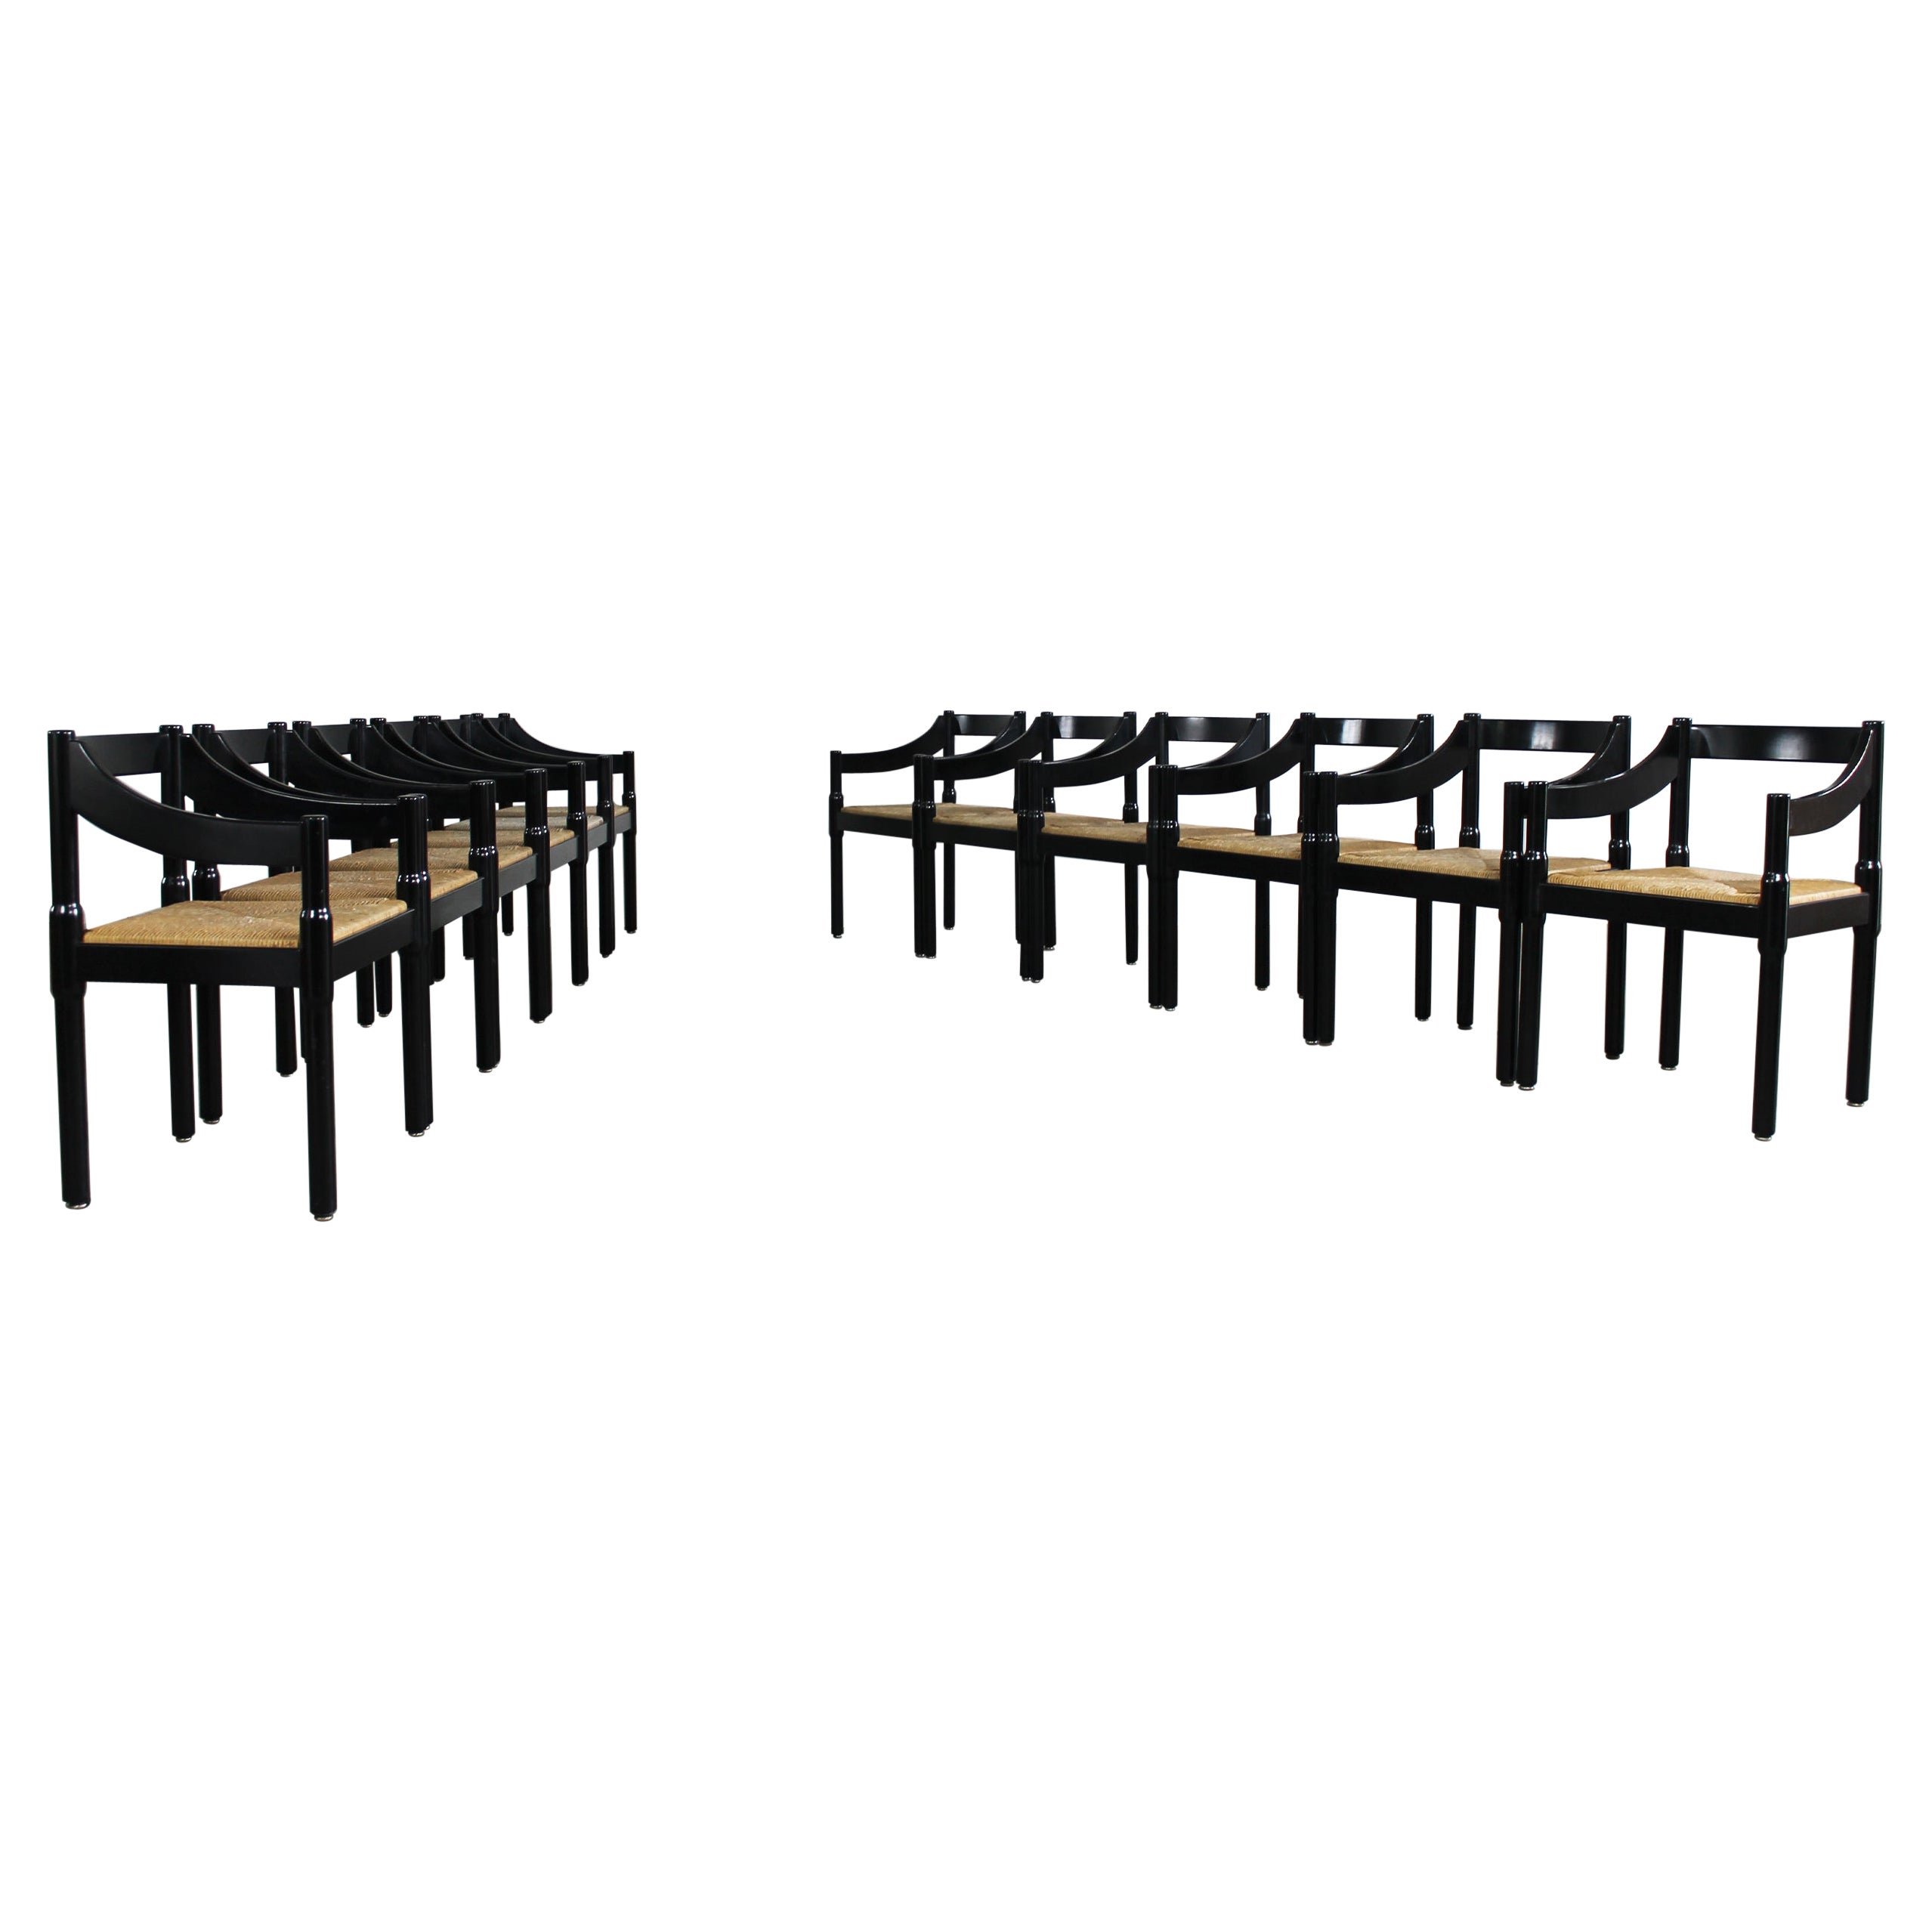 Vico Magistretti: Set aus zwölf schwarzen Carimate-Stühlen von Cassina, 1960er Jahre